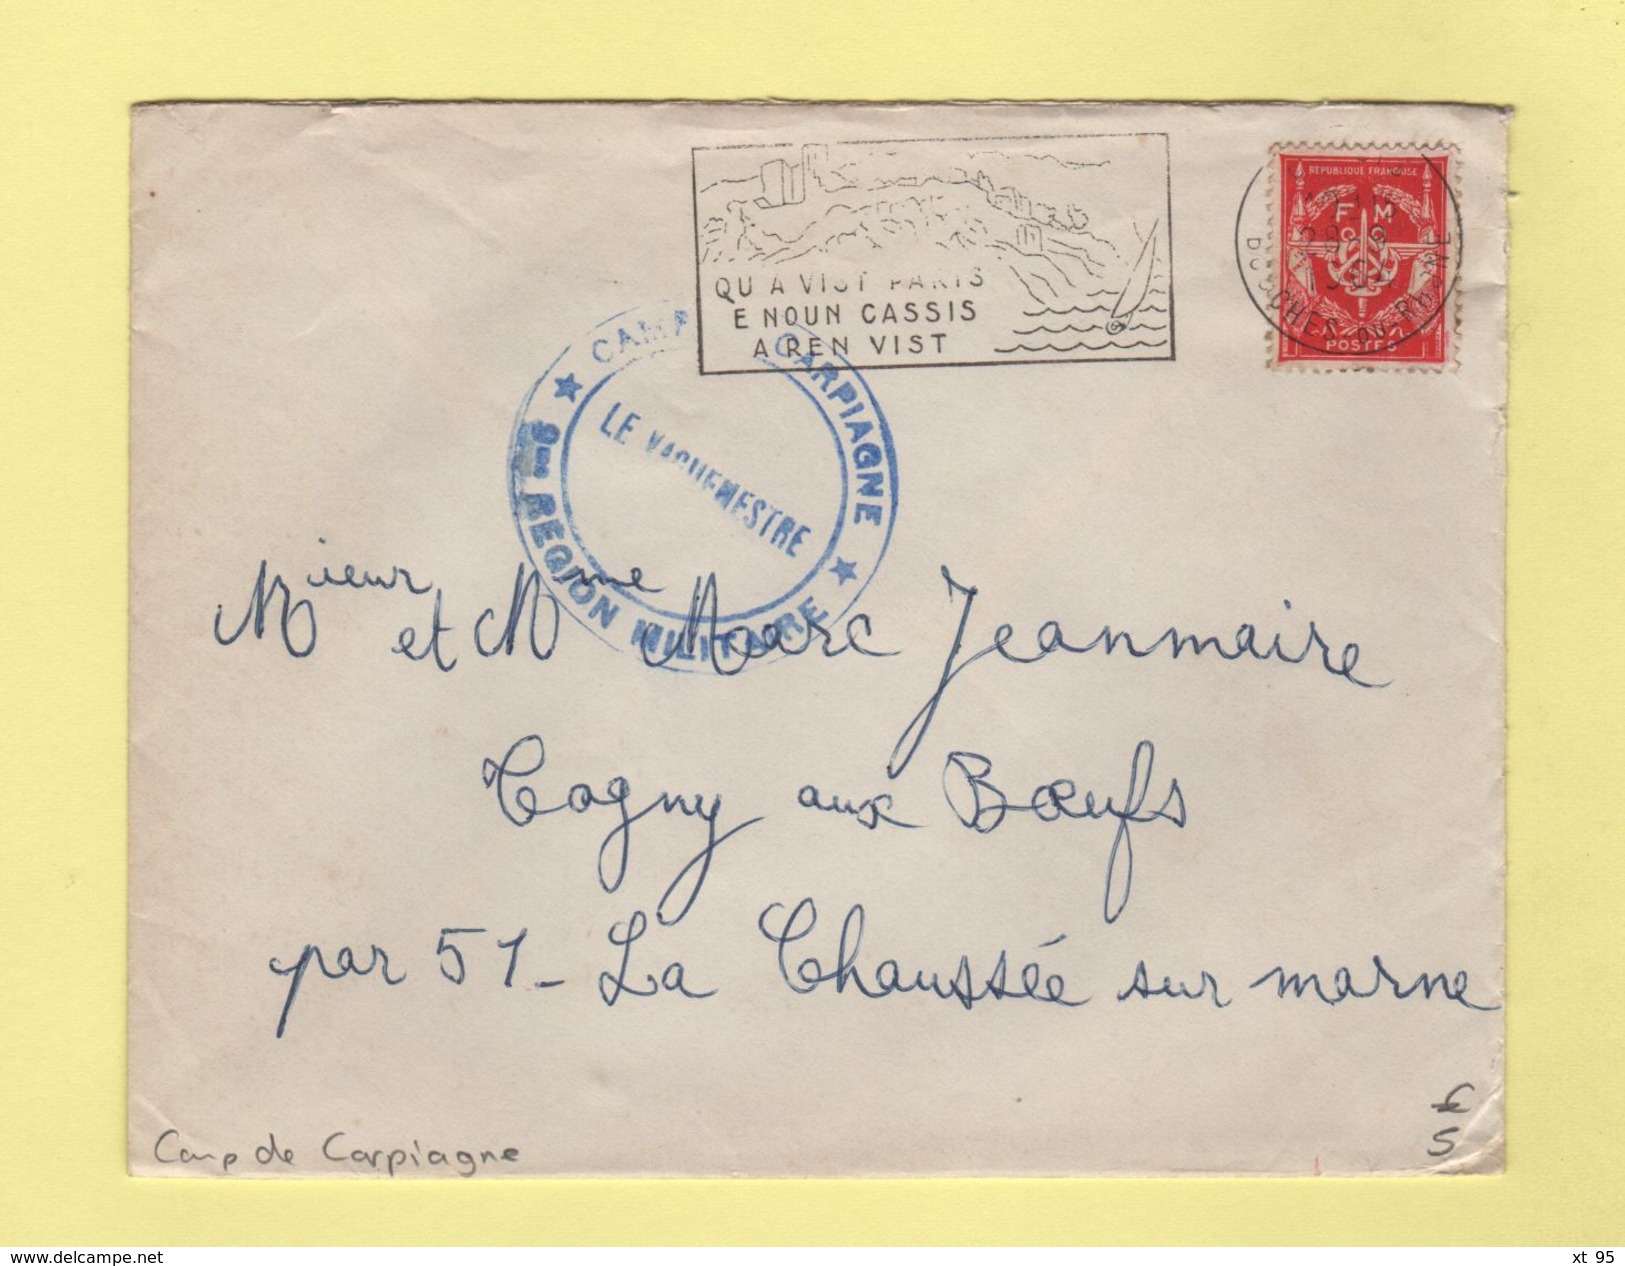 Camp De Carpiagne - Bouches Du Rhone - 28-9-1964 - Timbre FM - Military Postage Stamps